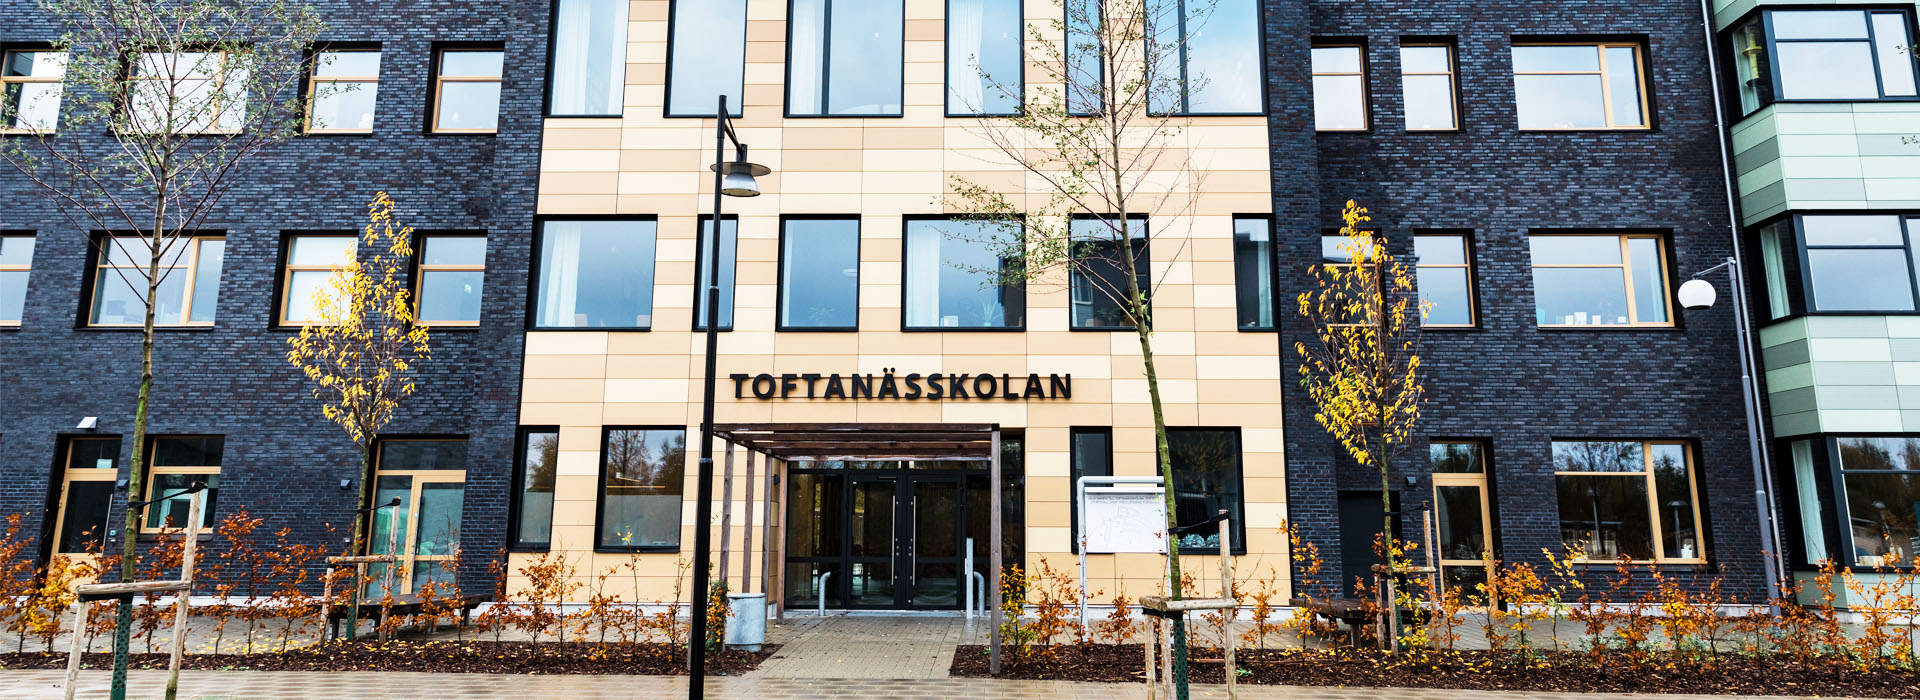 Toftanässkolan invigdes 2019 och ligger i östra Malmö nära
två större grönområden.